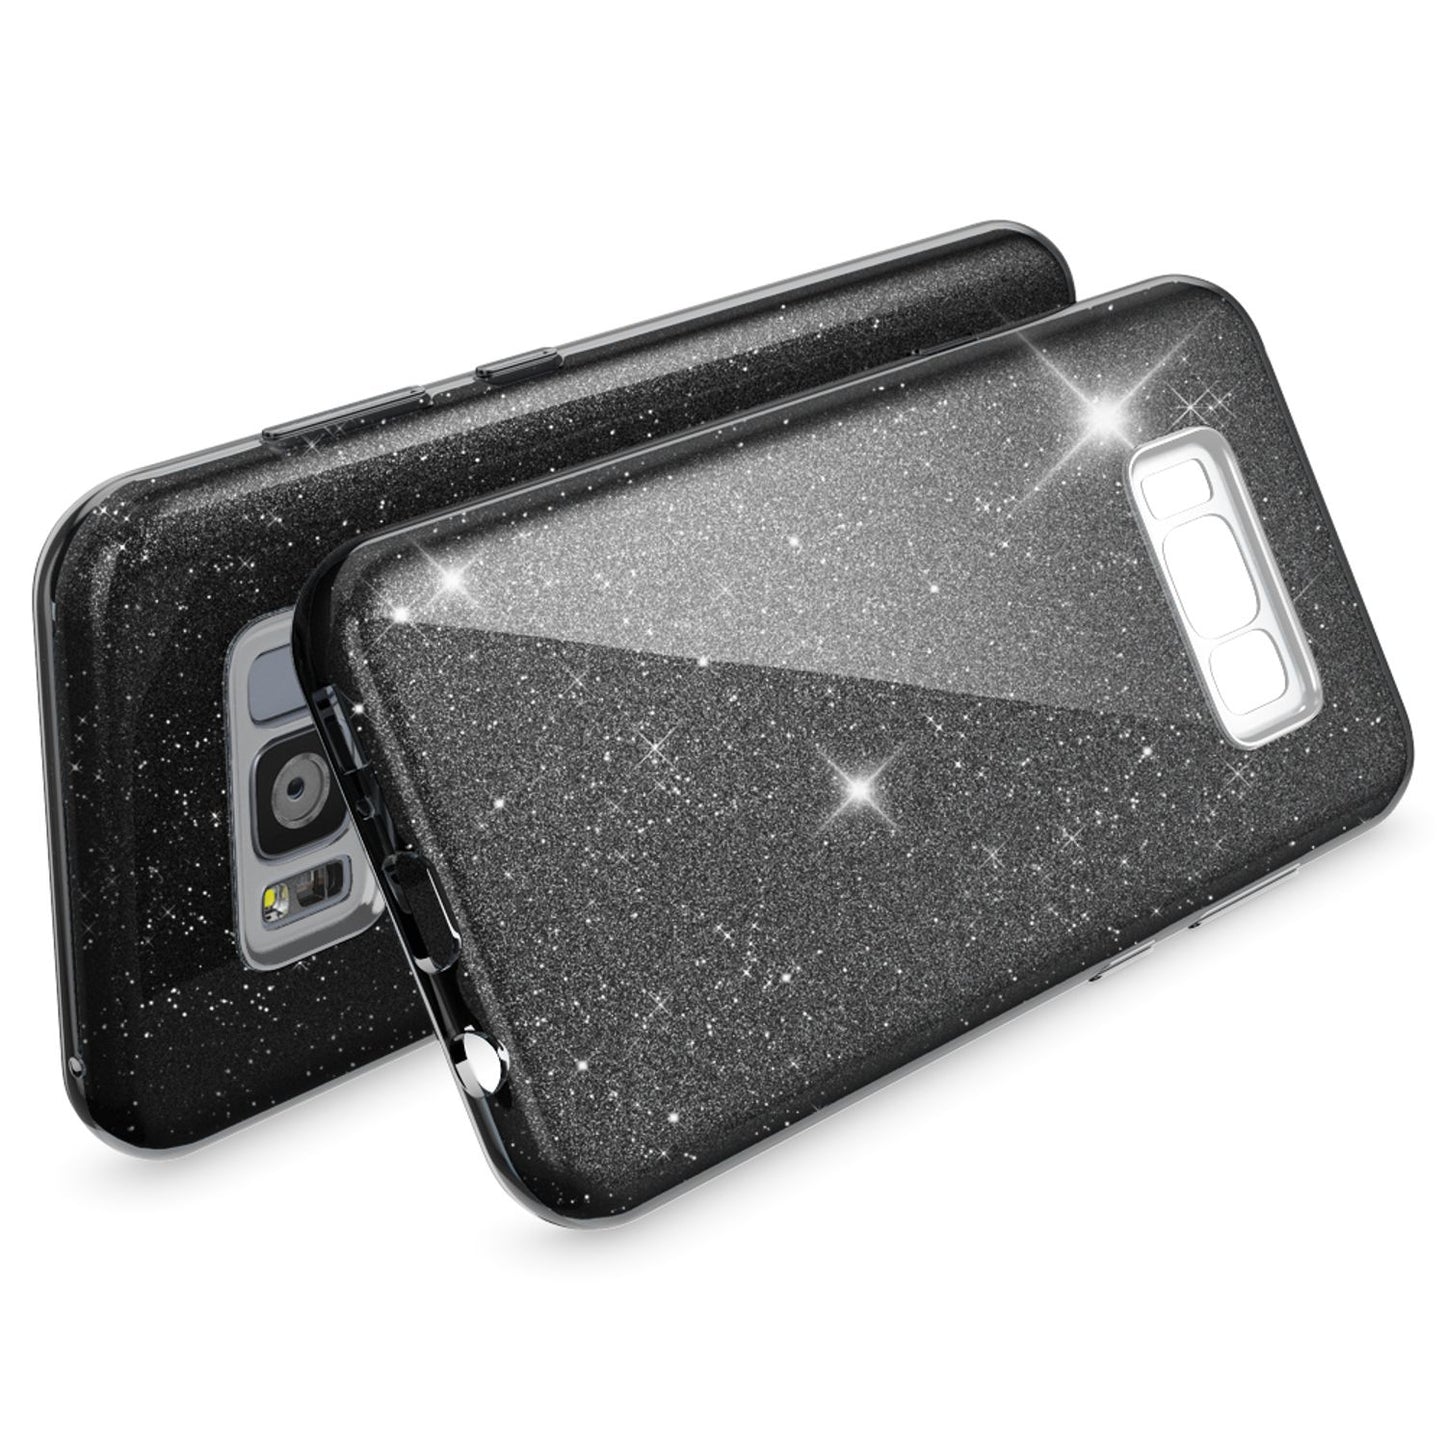 Samsung Galaxy S8 Hülle Handyhülle von NALIA, Glitzer Slim Case Cover Schutzhülle